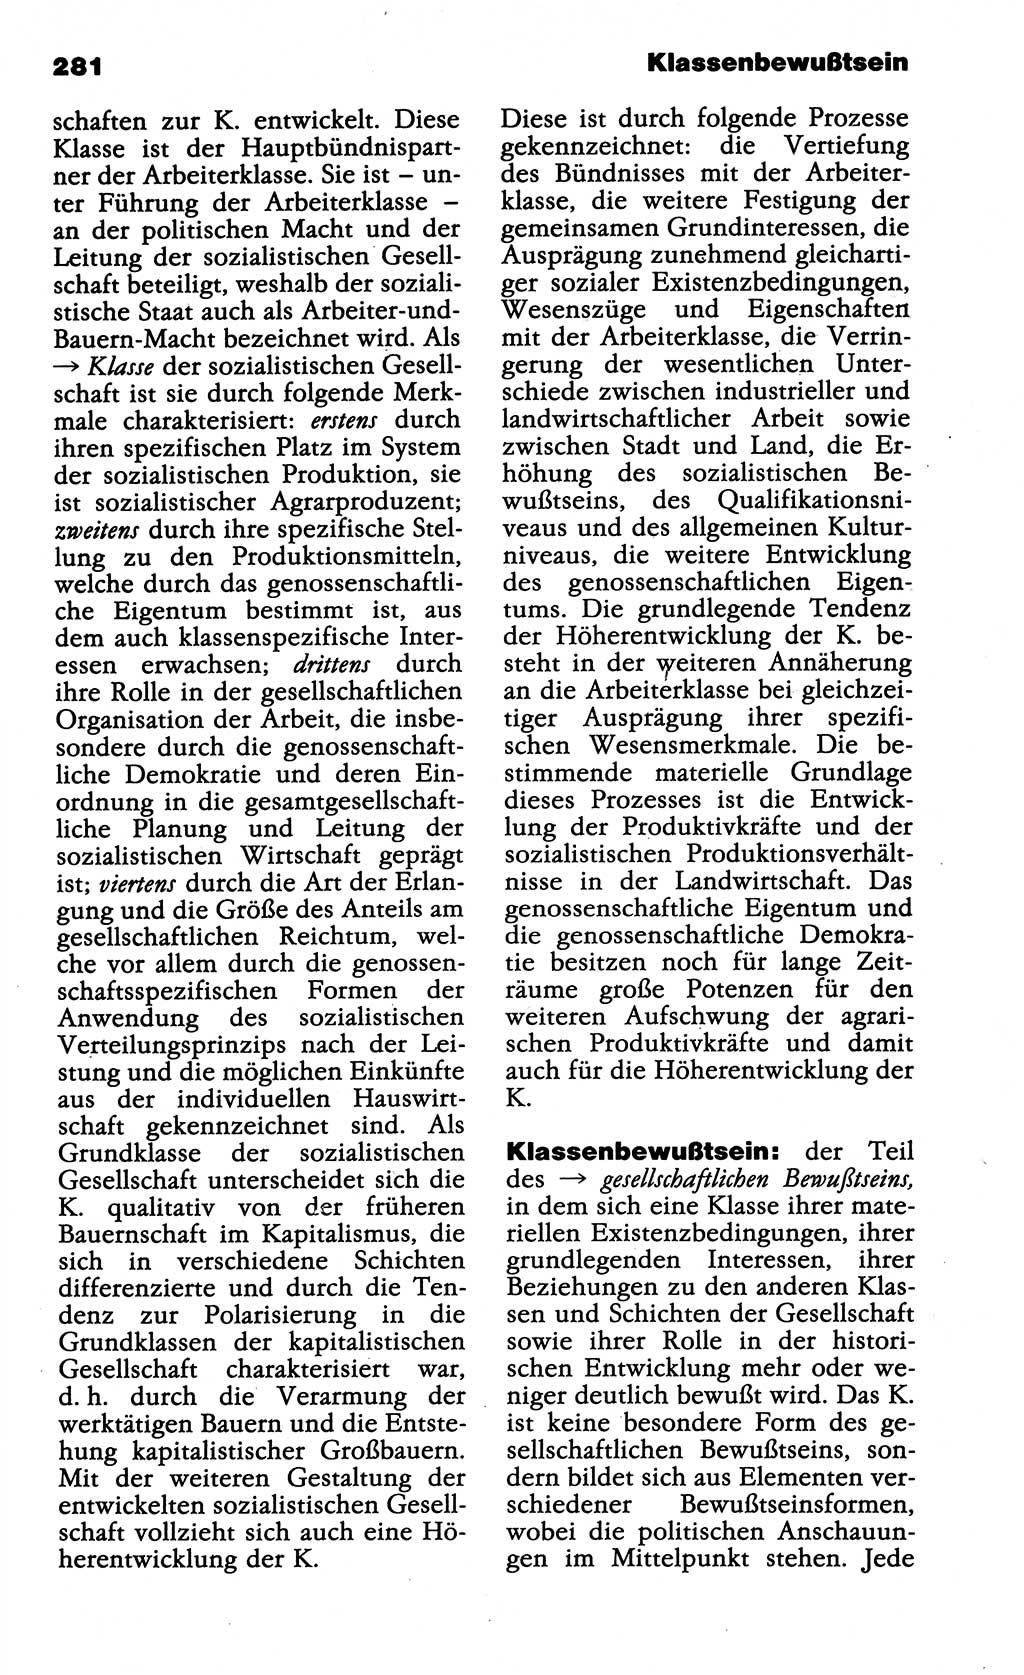 Wörterbuch der marxistisch-leninistischen Philosophie [Deutsche Demokratische Republik (DDR)] 1985, Seite 281 (Wb. ML Phil. DDR 1985, S. 281)